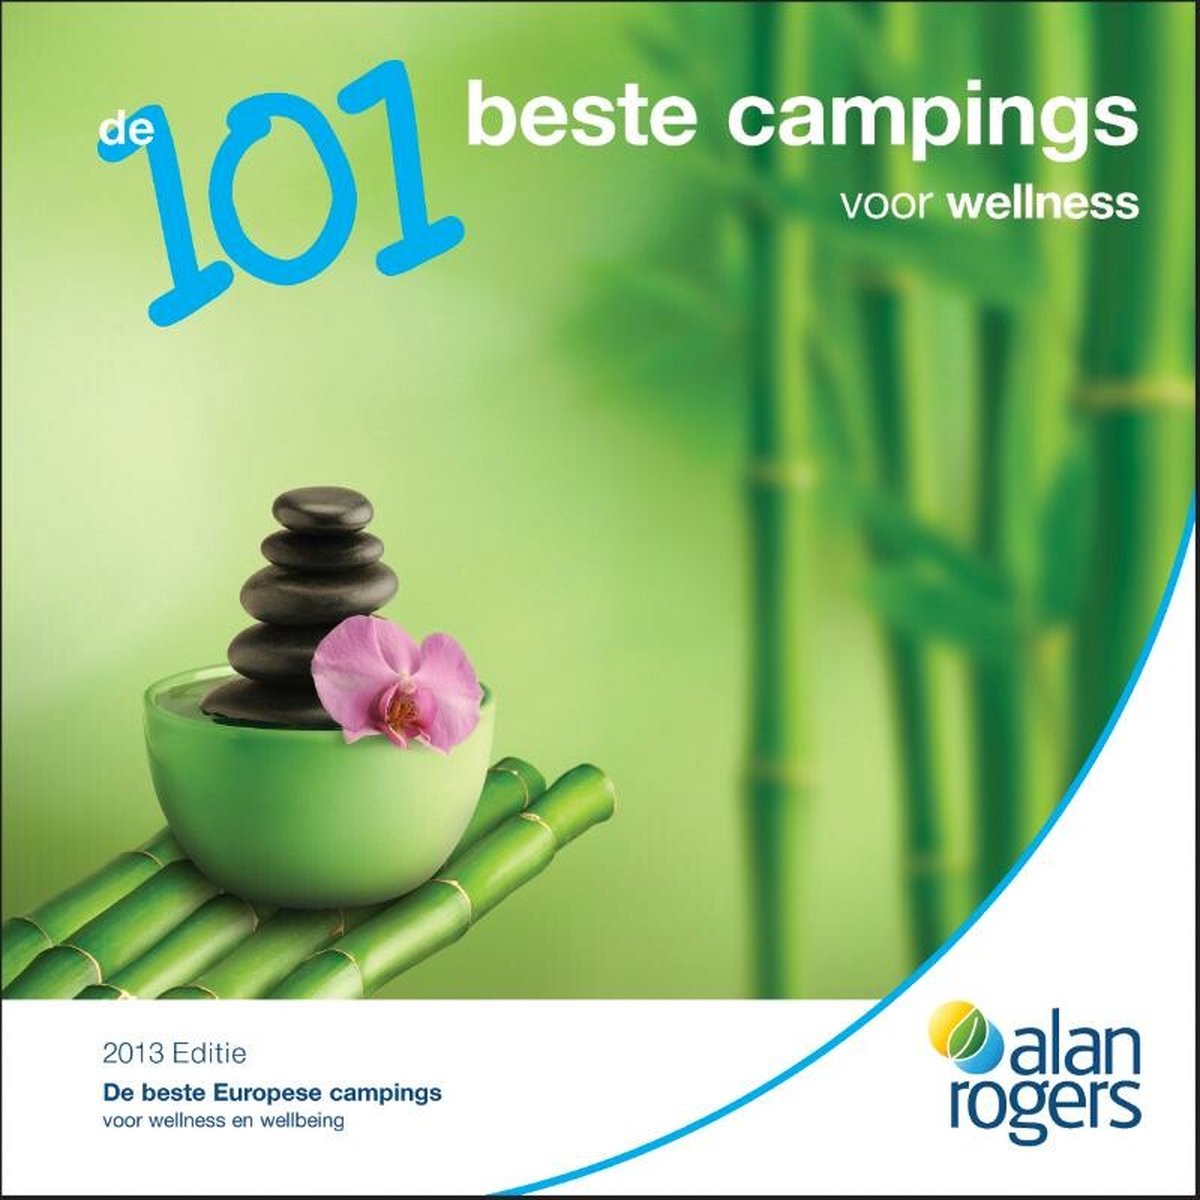 De 101 beste campings voor wellness